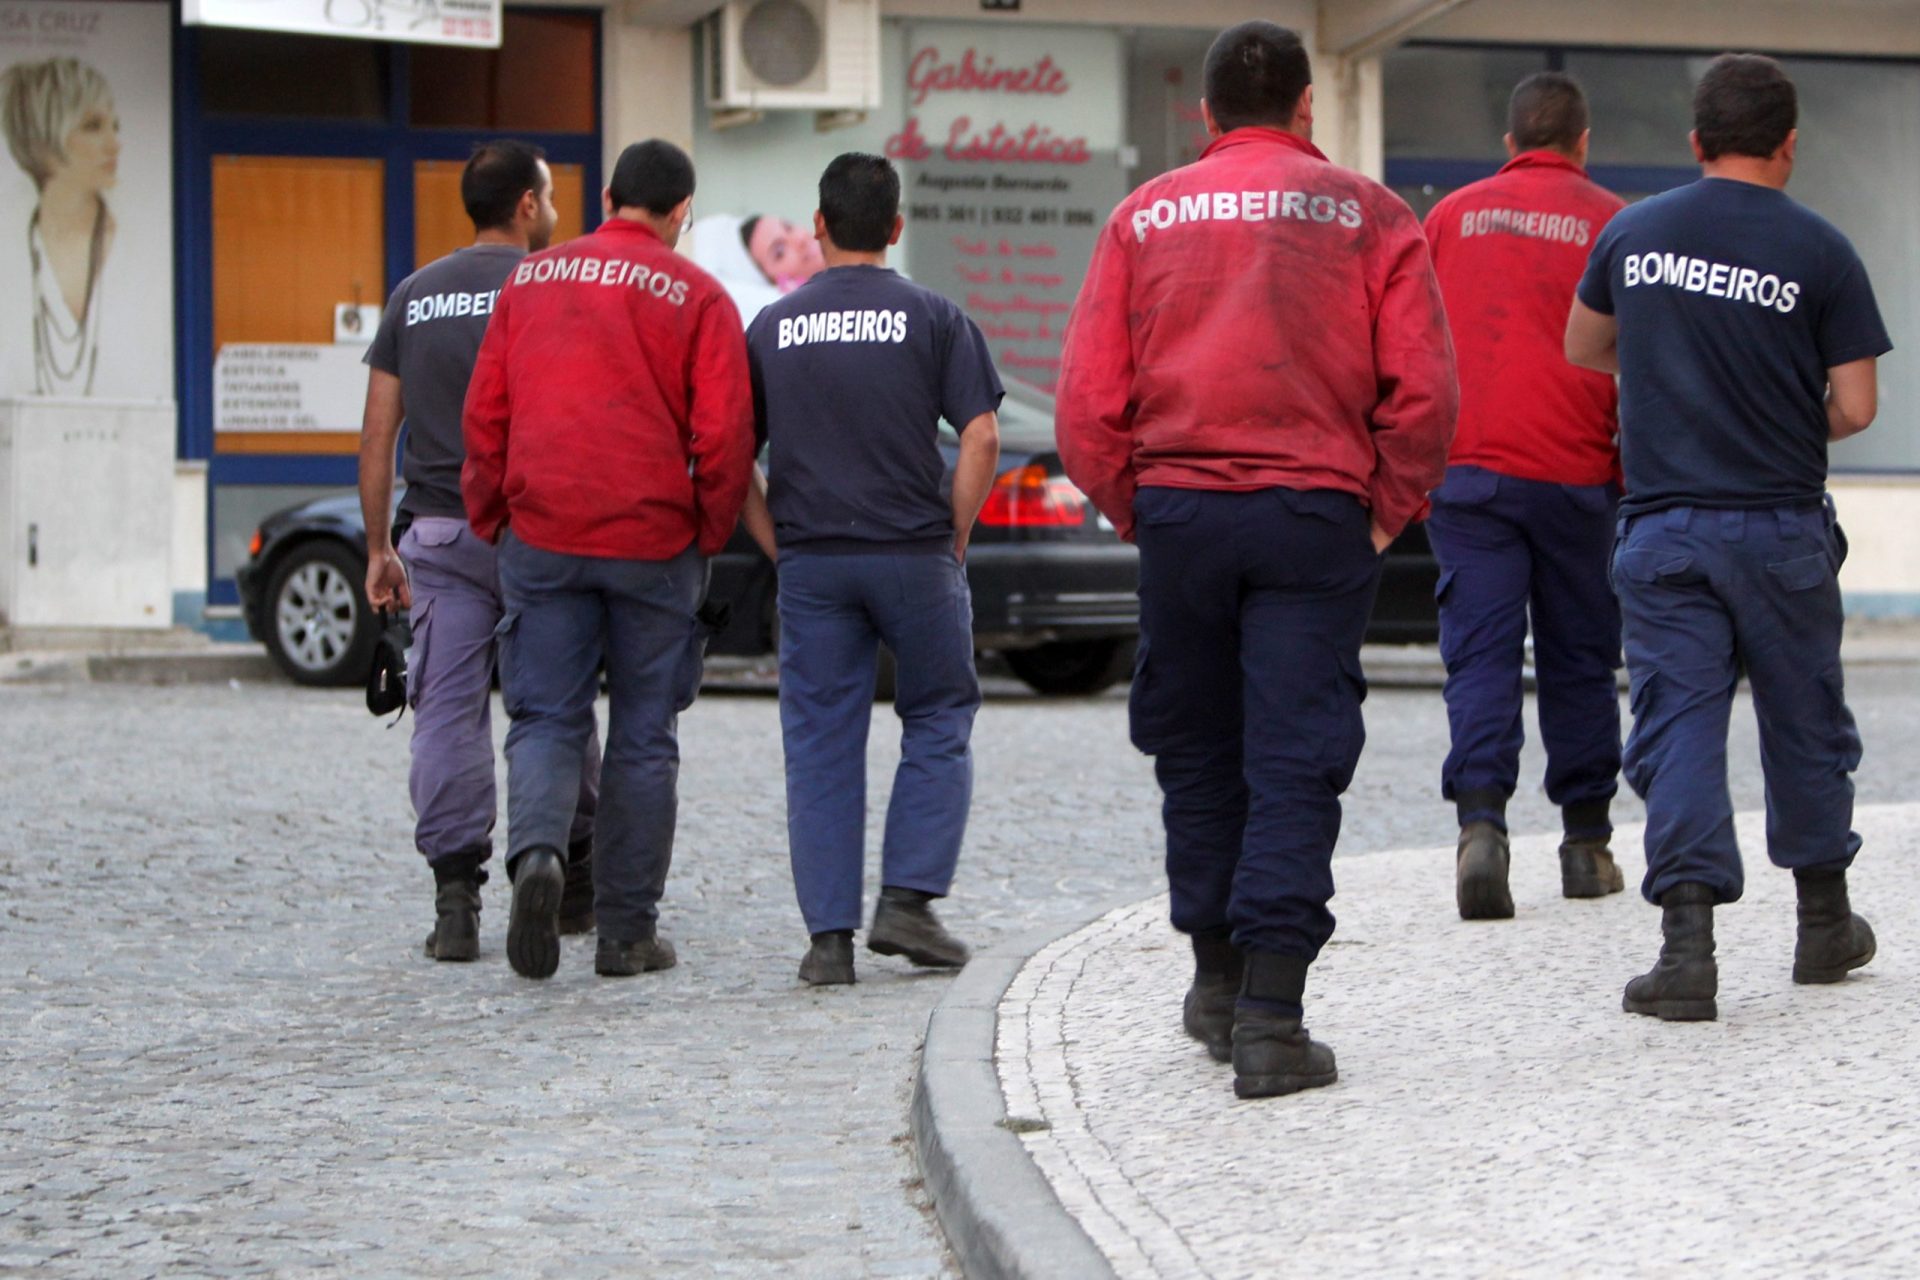 Bombeiros juntam-se em Lisboa para exigir mudanças